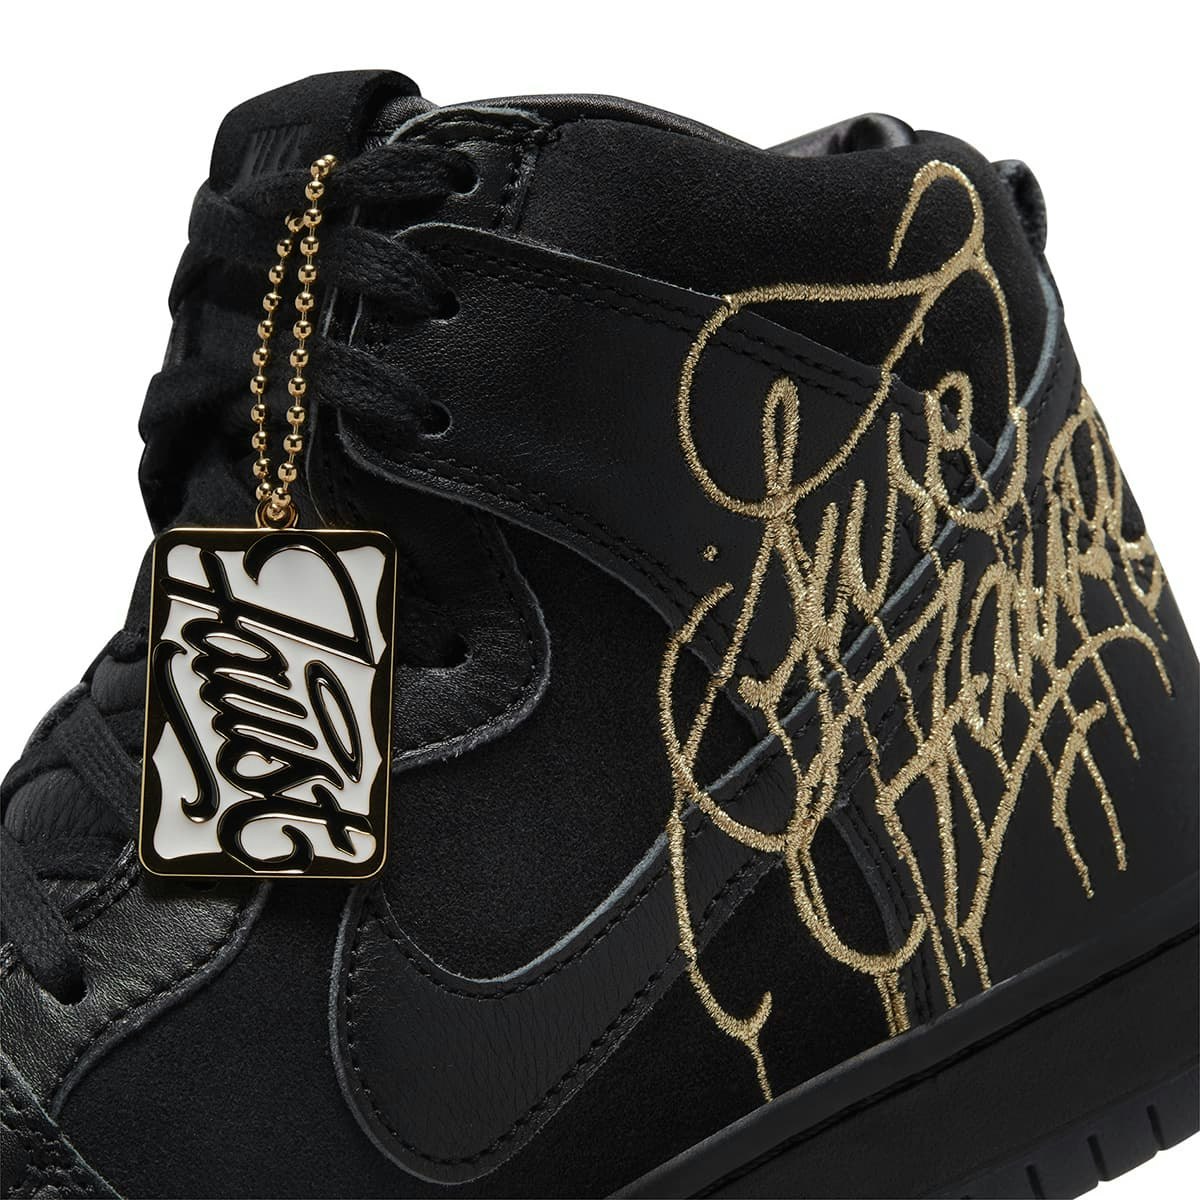 FAUST x Nike SB Dunk High "Black Gold"